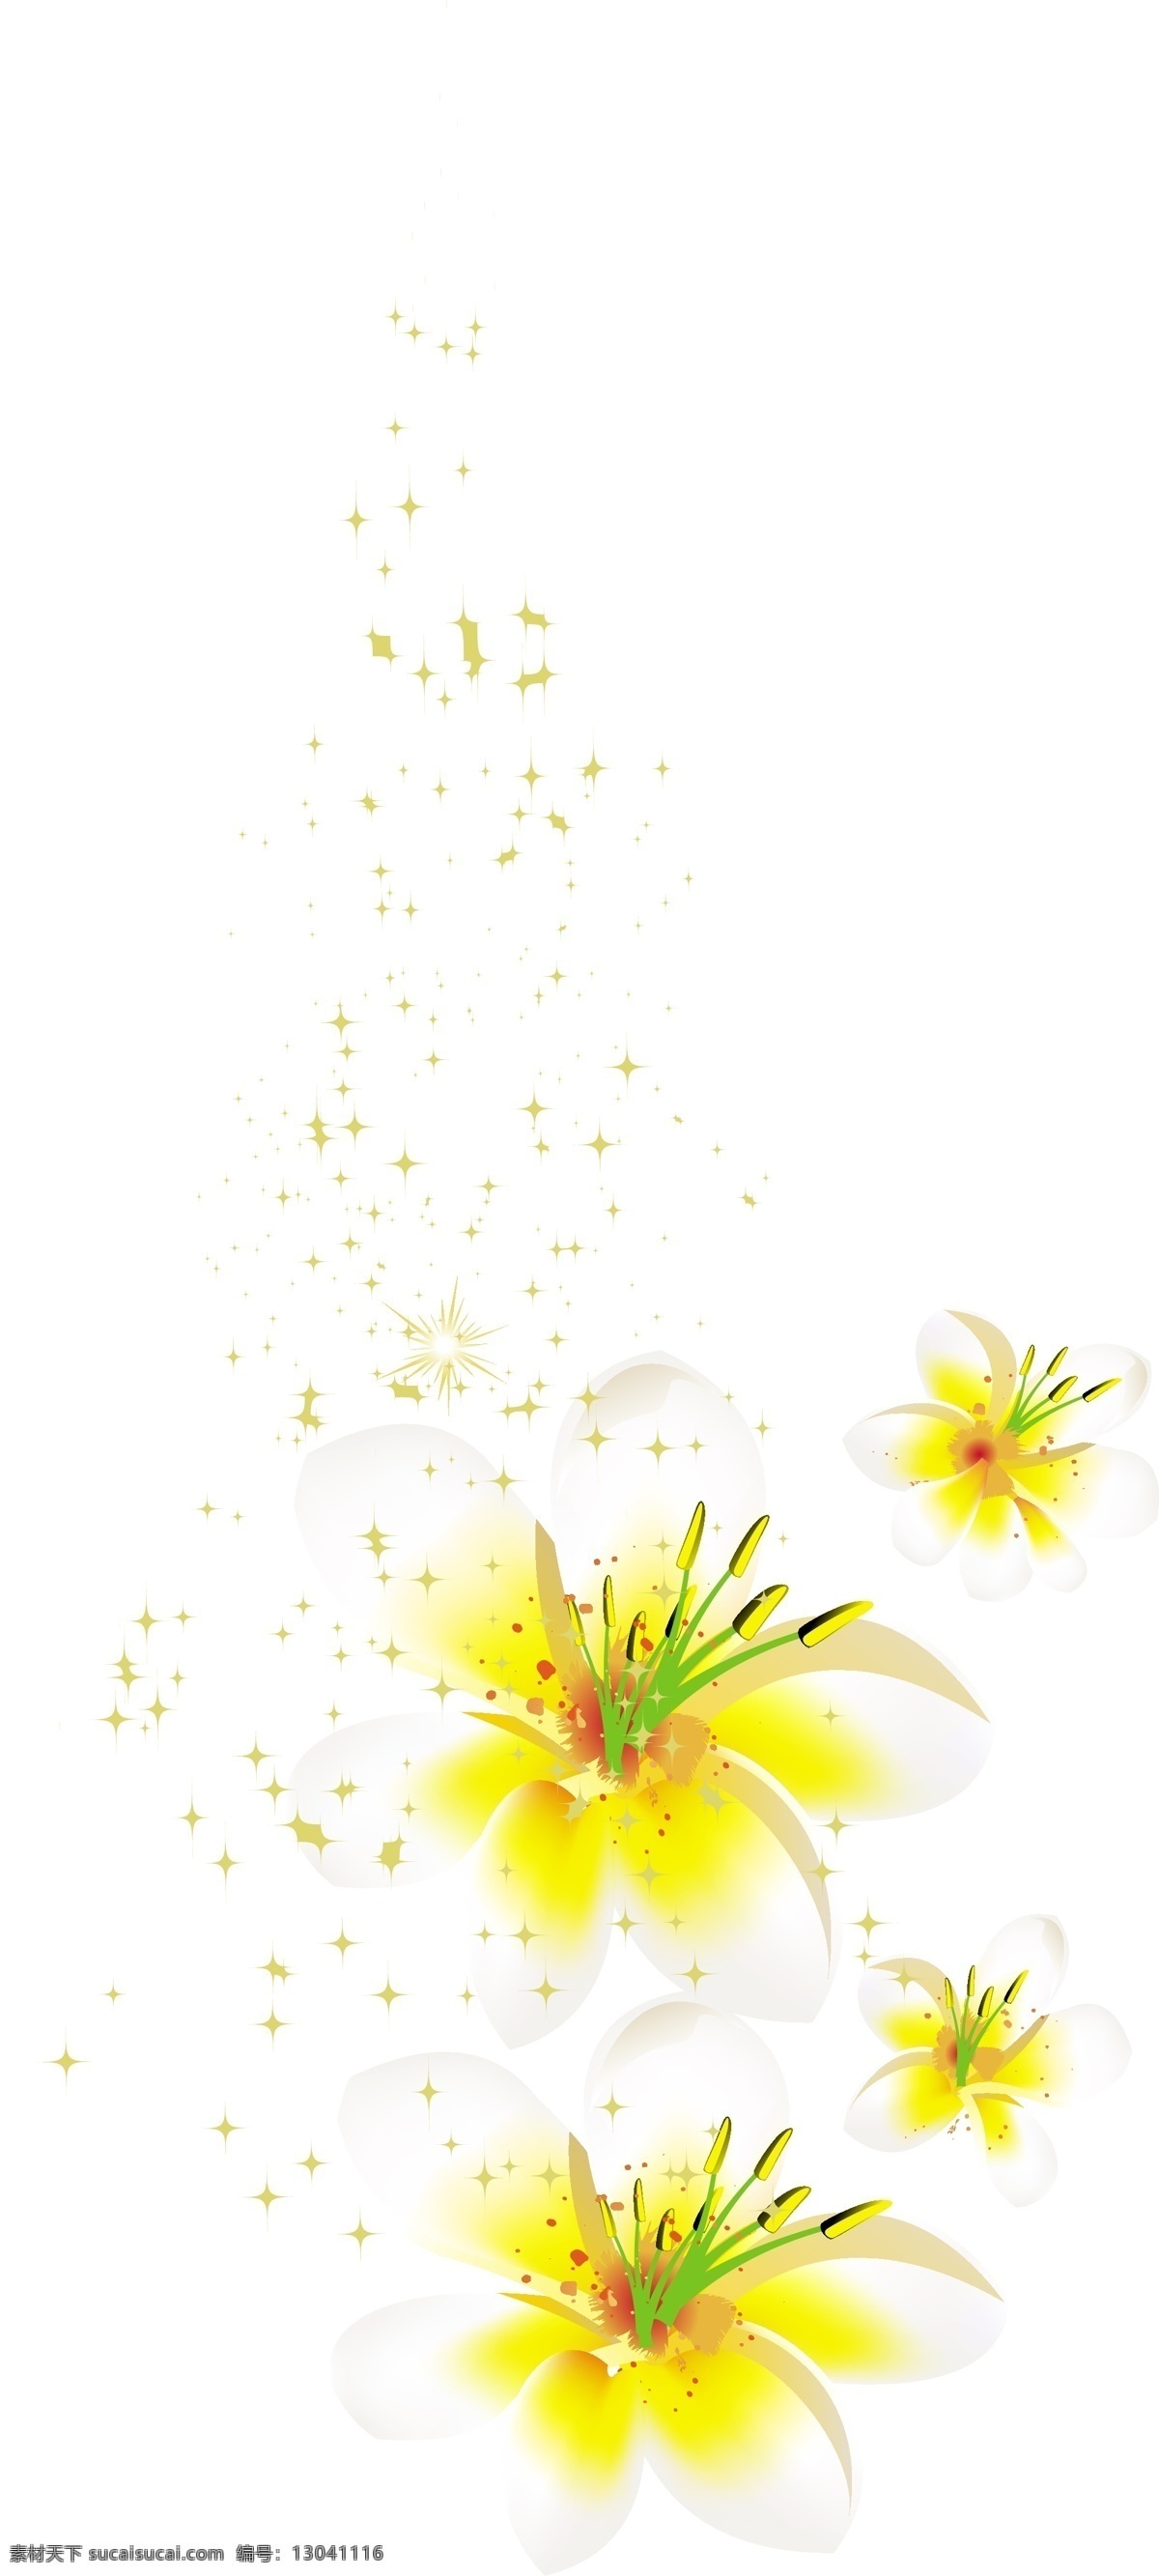 手绘 黄色 花蕊 元素 清新 花朵 花瓣 矢量